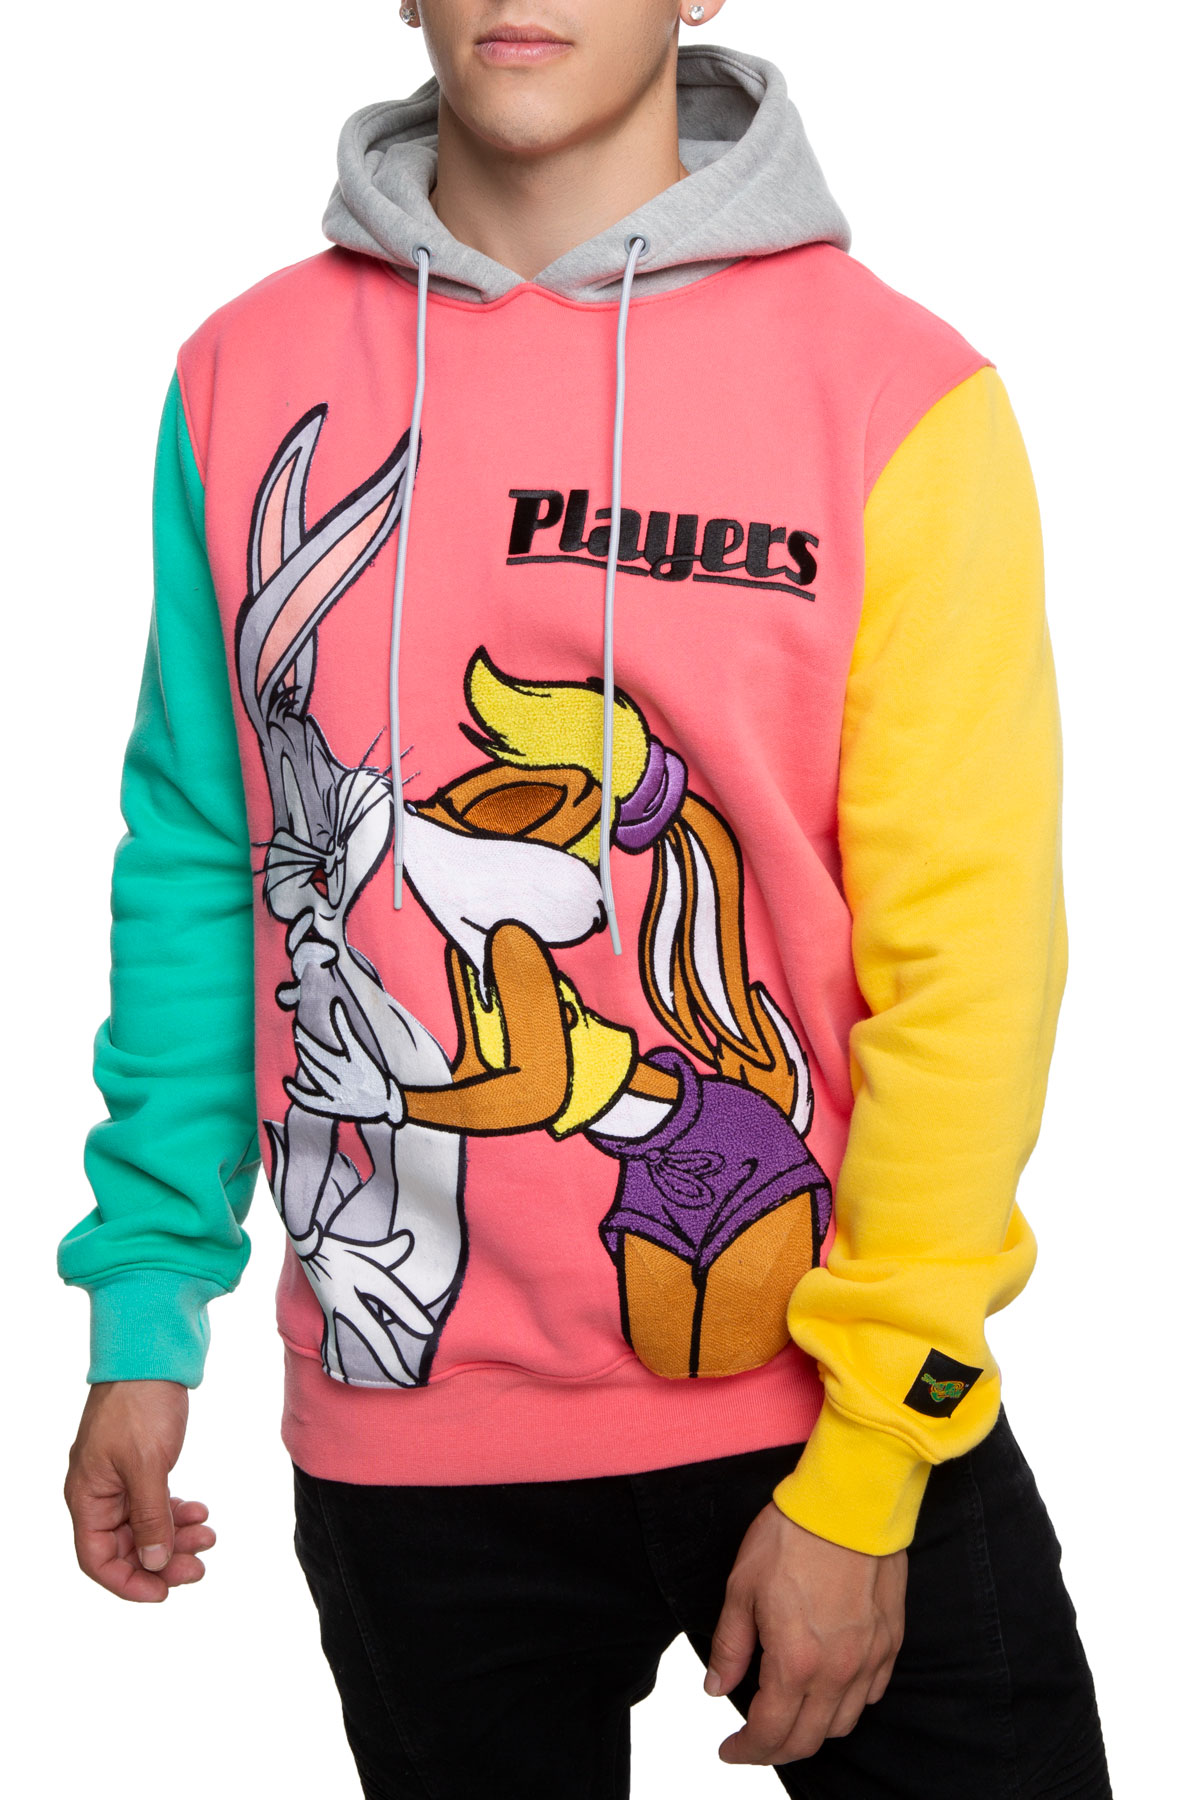 Bugs Bunny Hoodie  Bugs bunny hoodie, Hoodies, Pullover sweatshirt hoodie